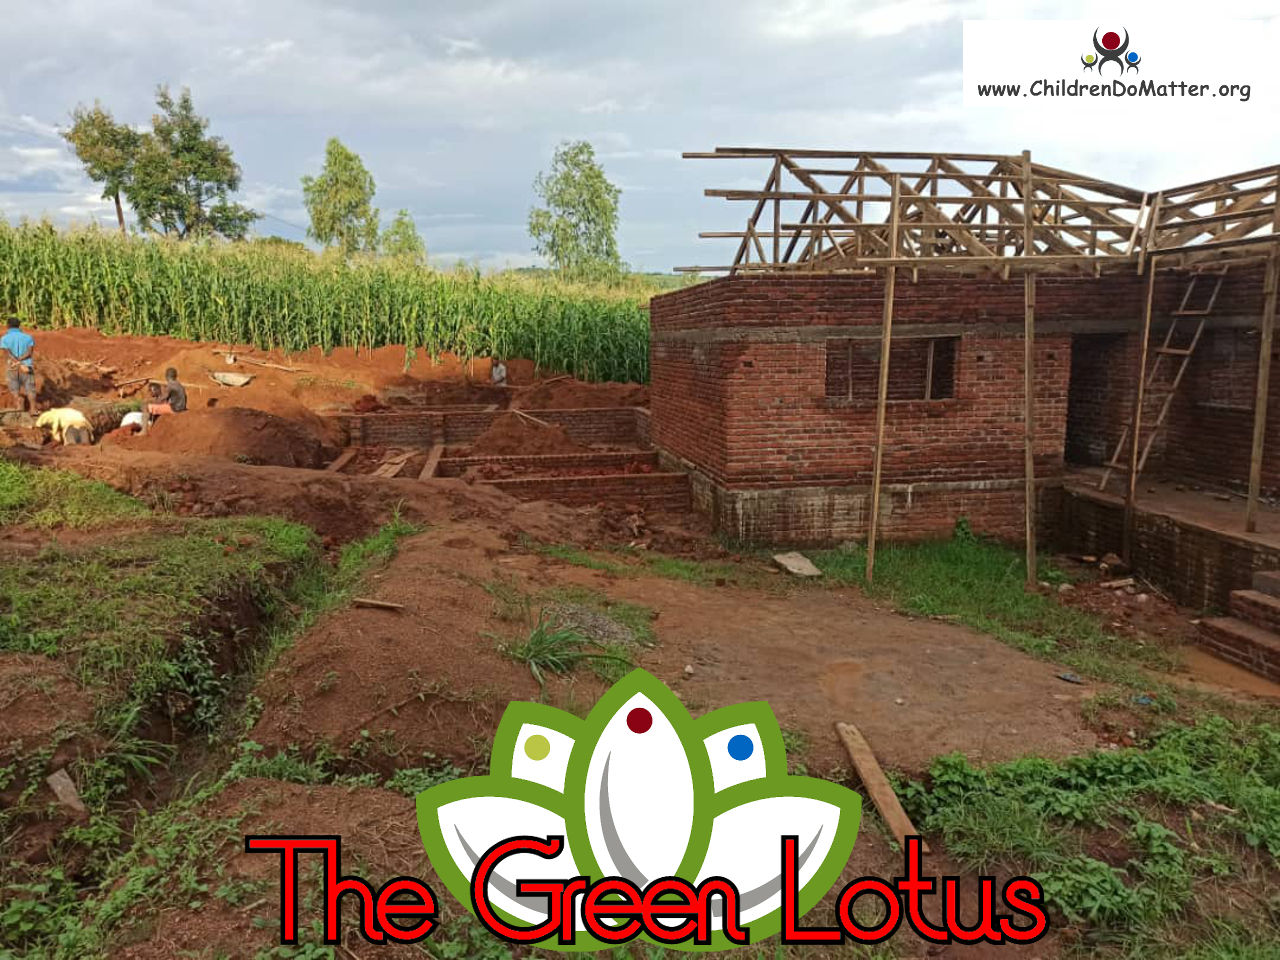 costruzione dell'orfanotrofio casa di accoglienza the green lotus a blantyre malawi - children do matter - 18